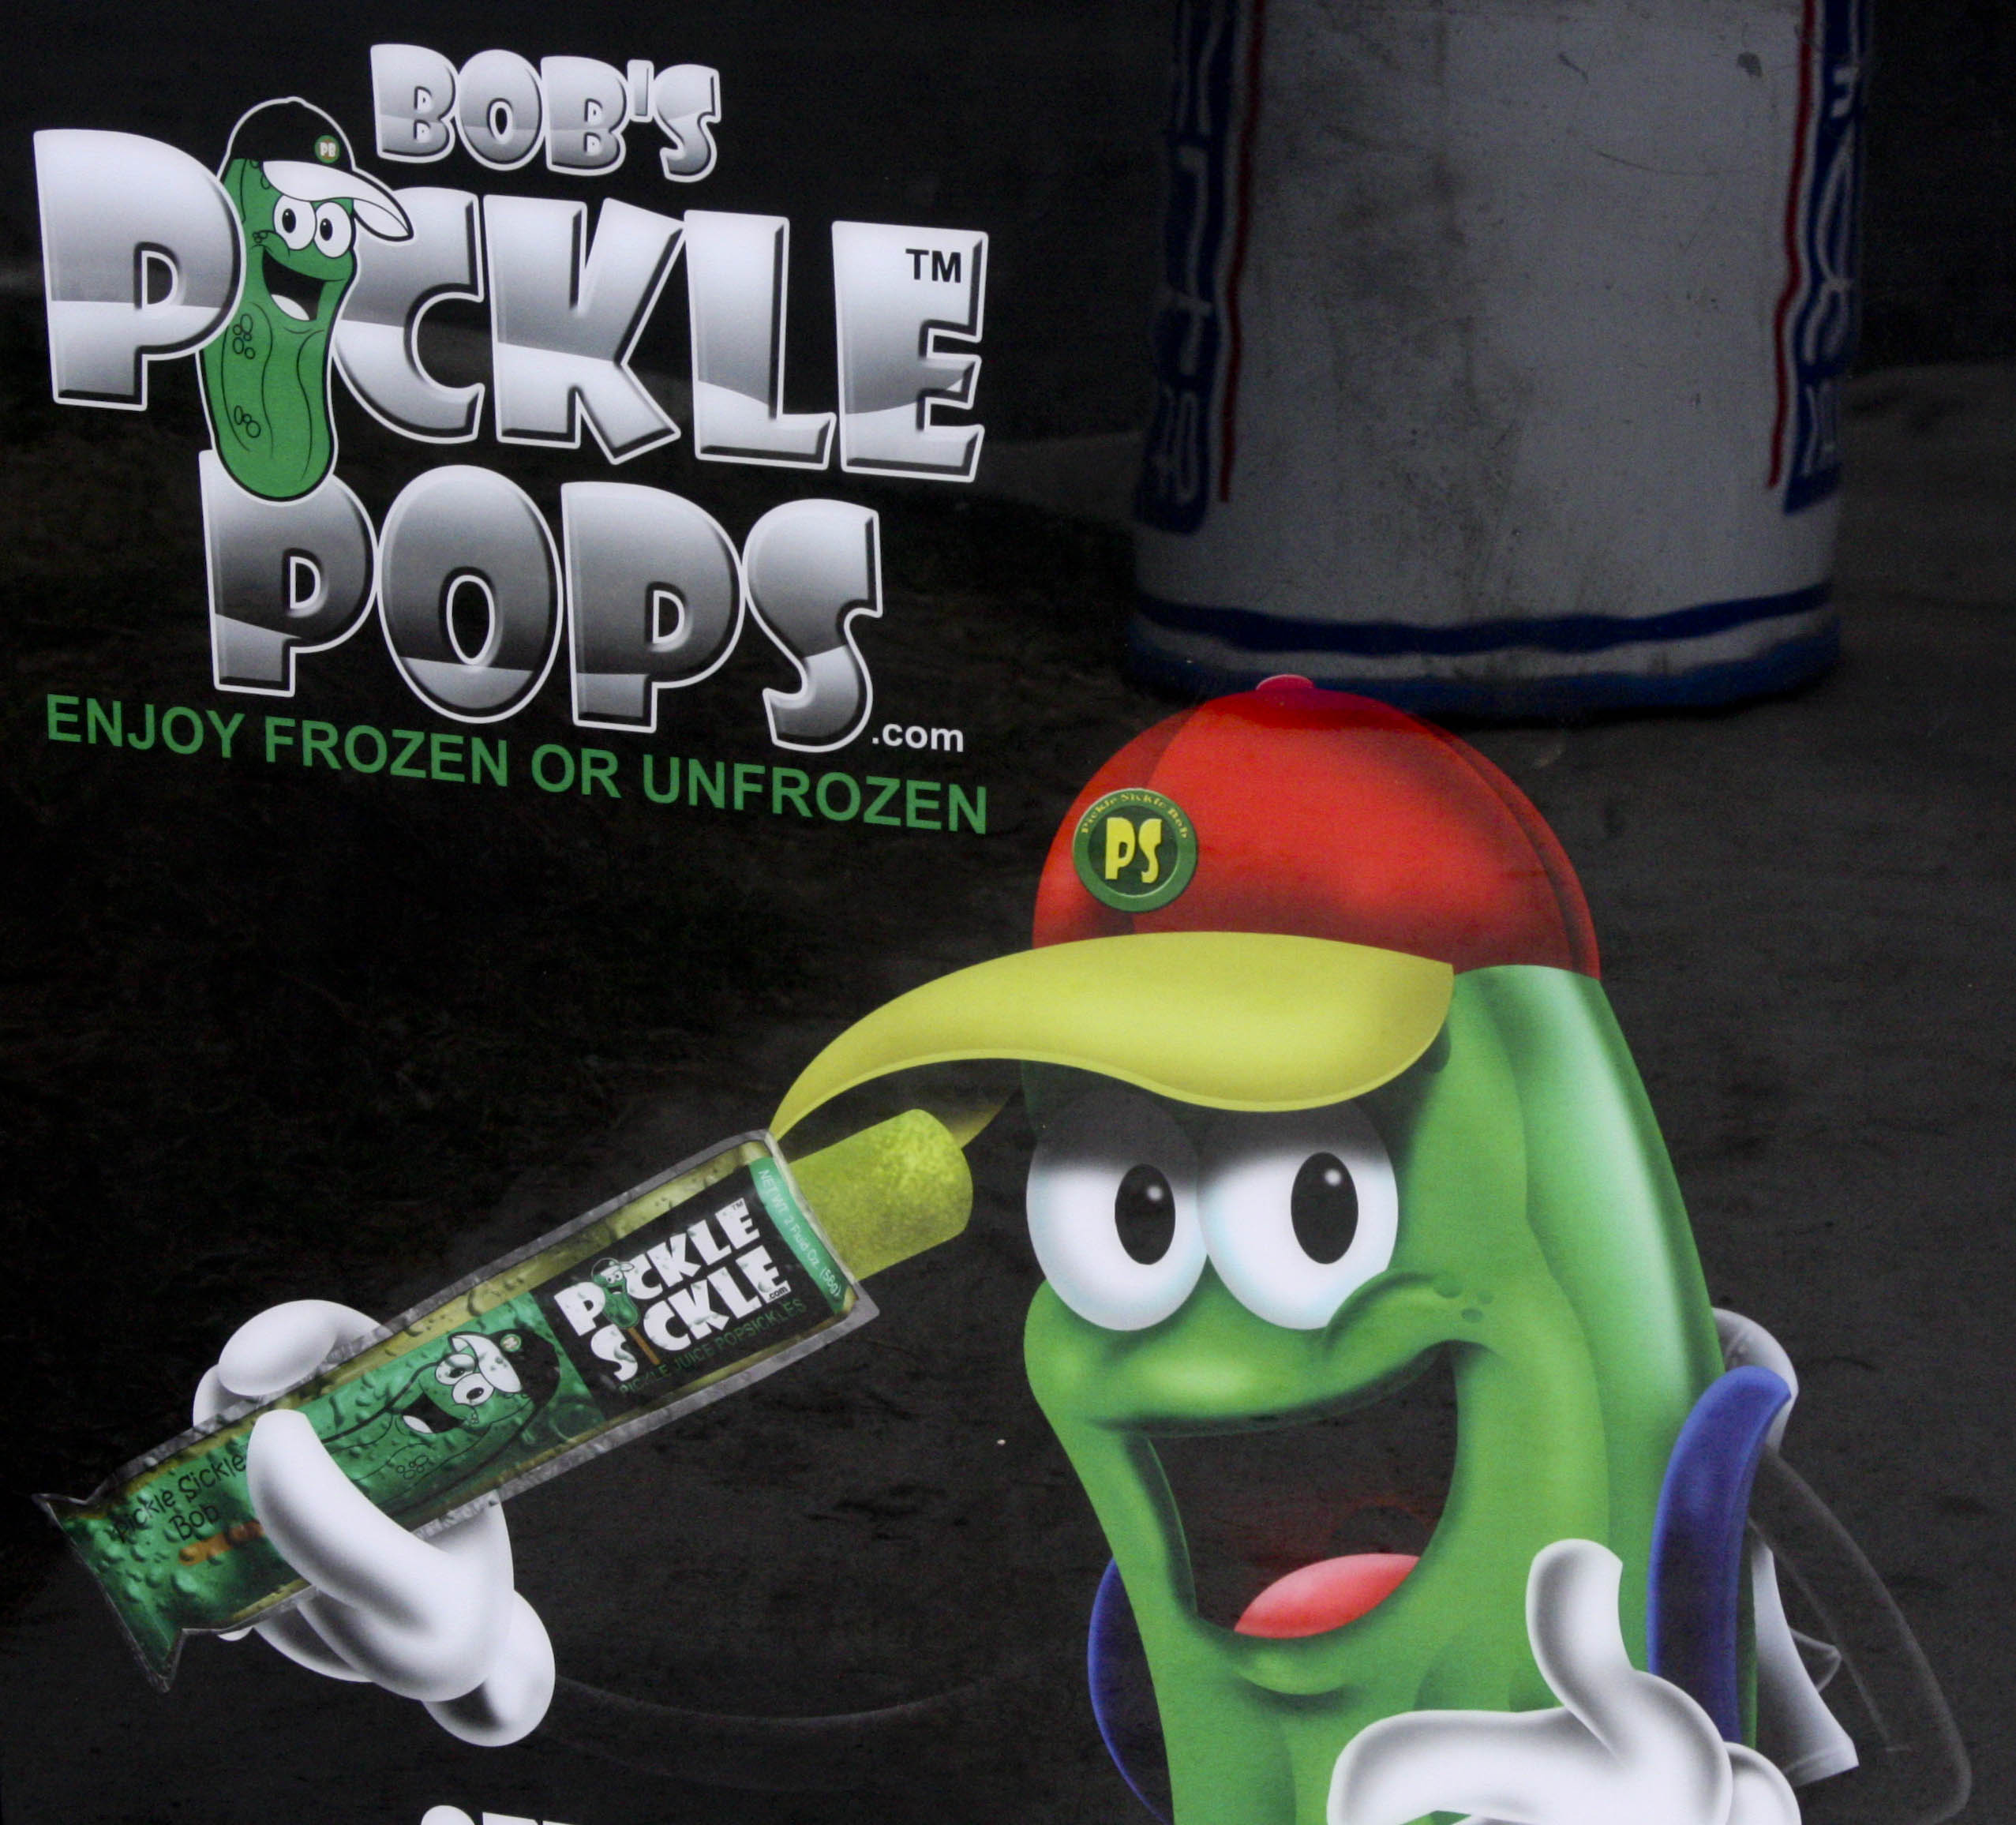 Bobs Pickle Pops